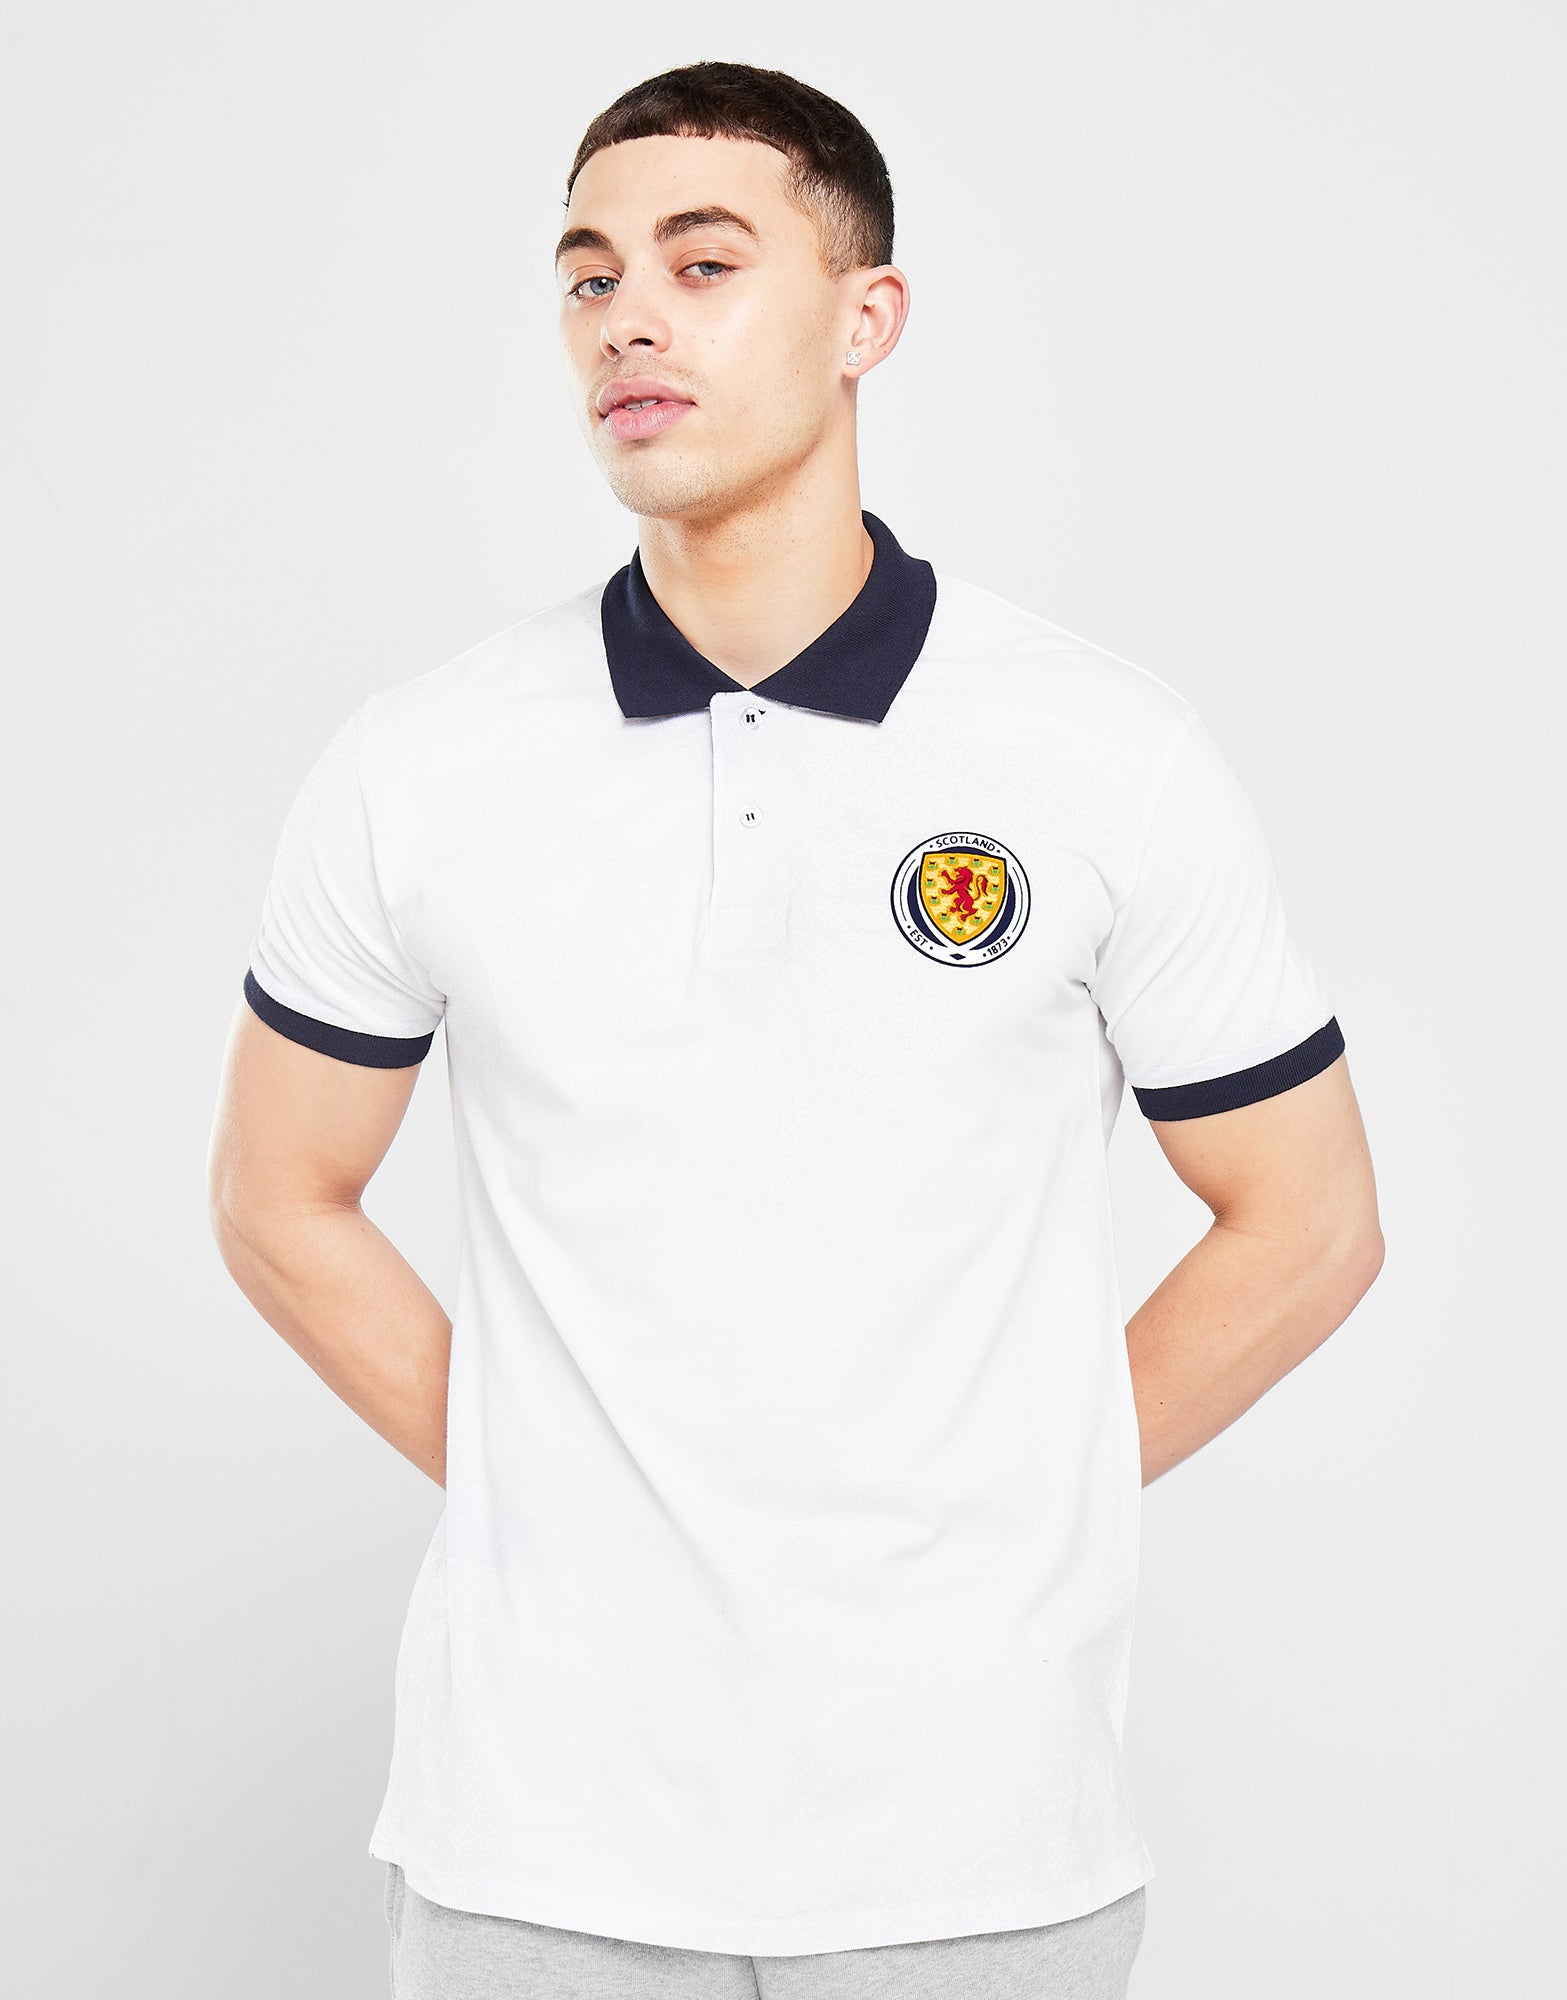 White Polo | Team Scotland – The World Football Store